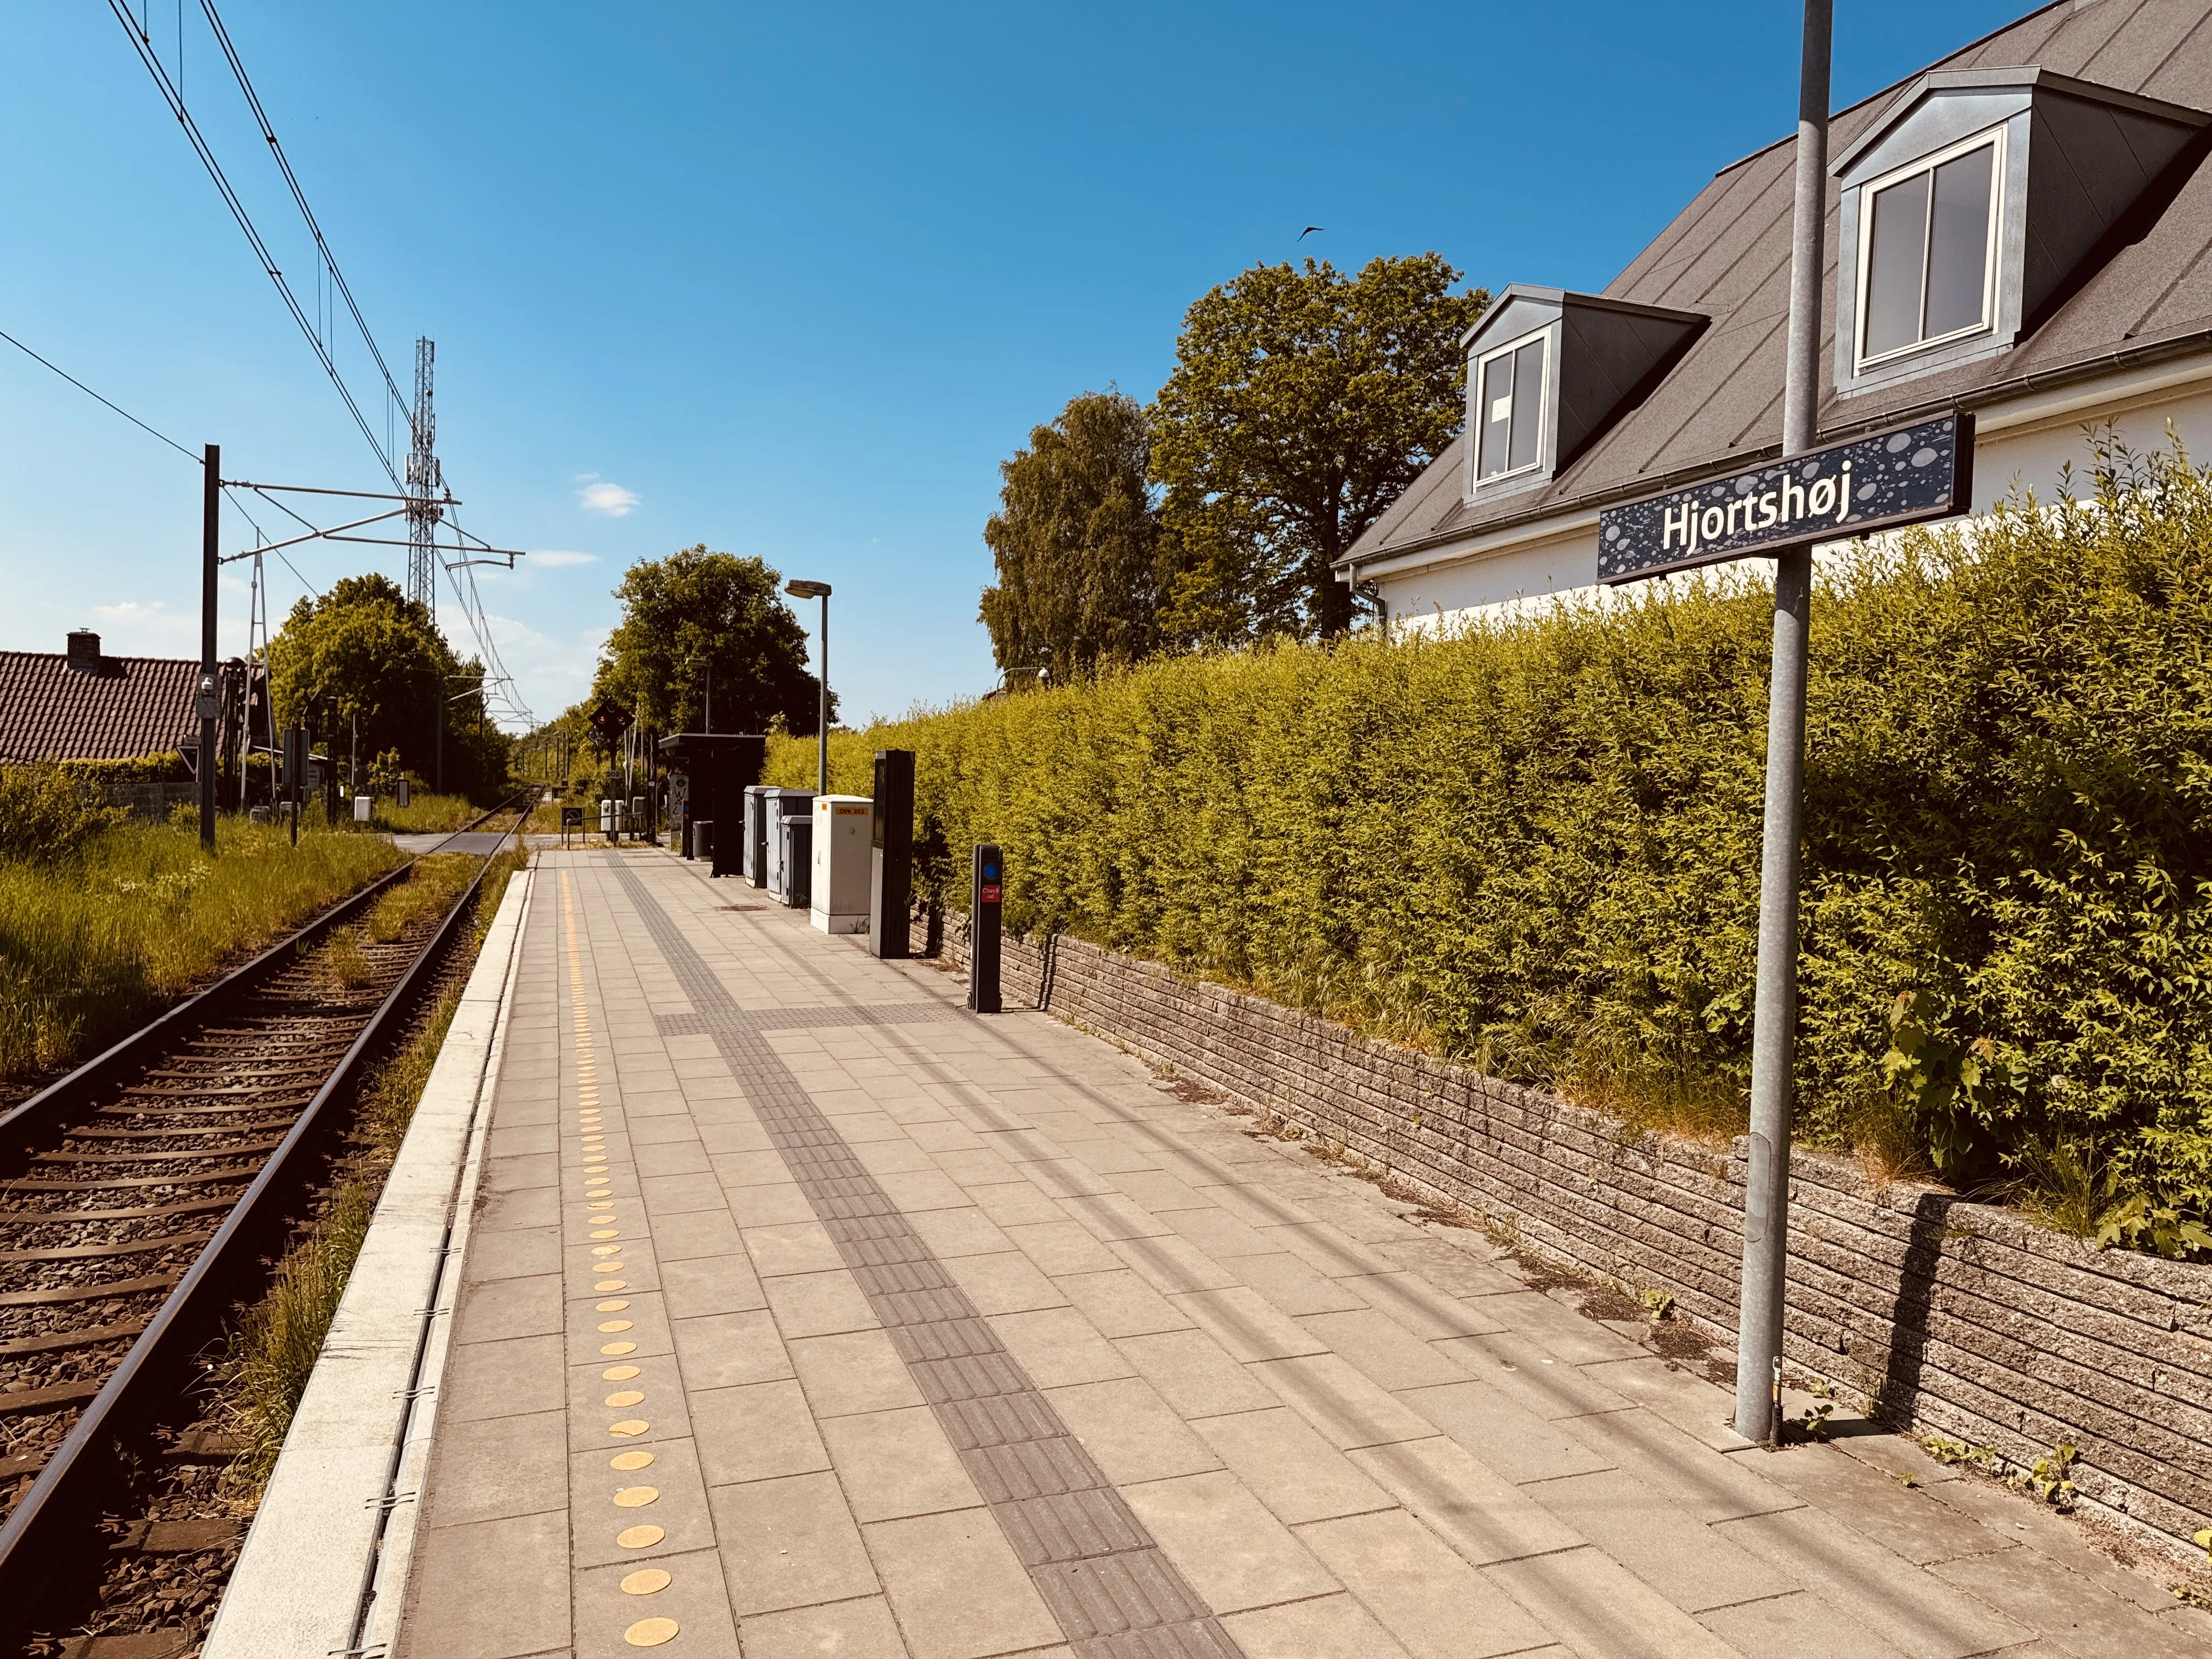 Billede af Hjortshøj Station - Station er nedrevet, men Hjortshøj Station har ligget her.